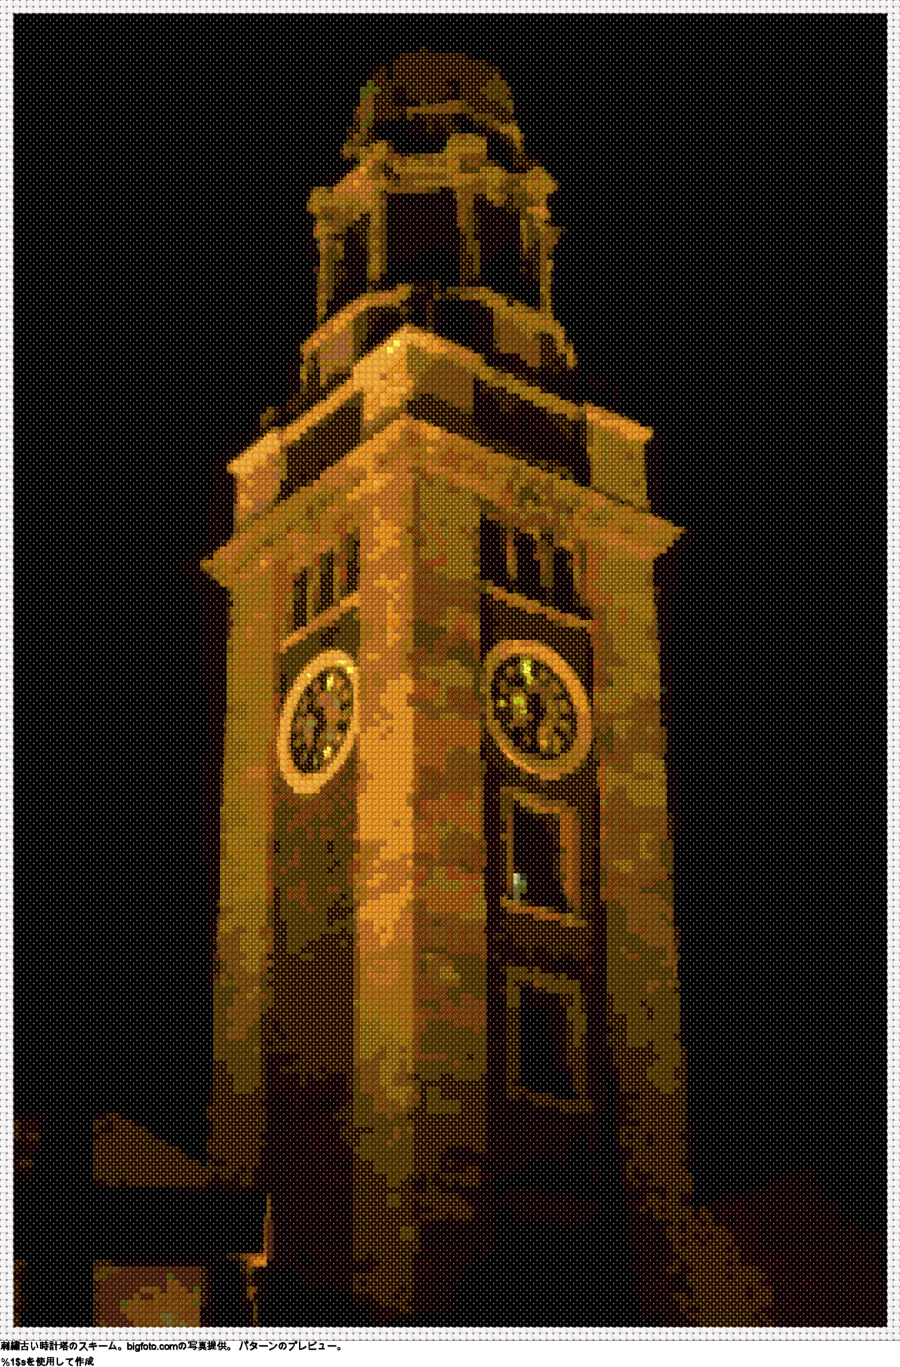 古い時計塔